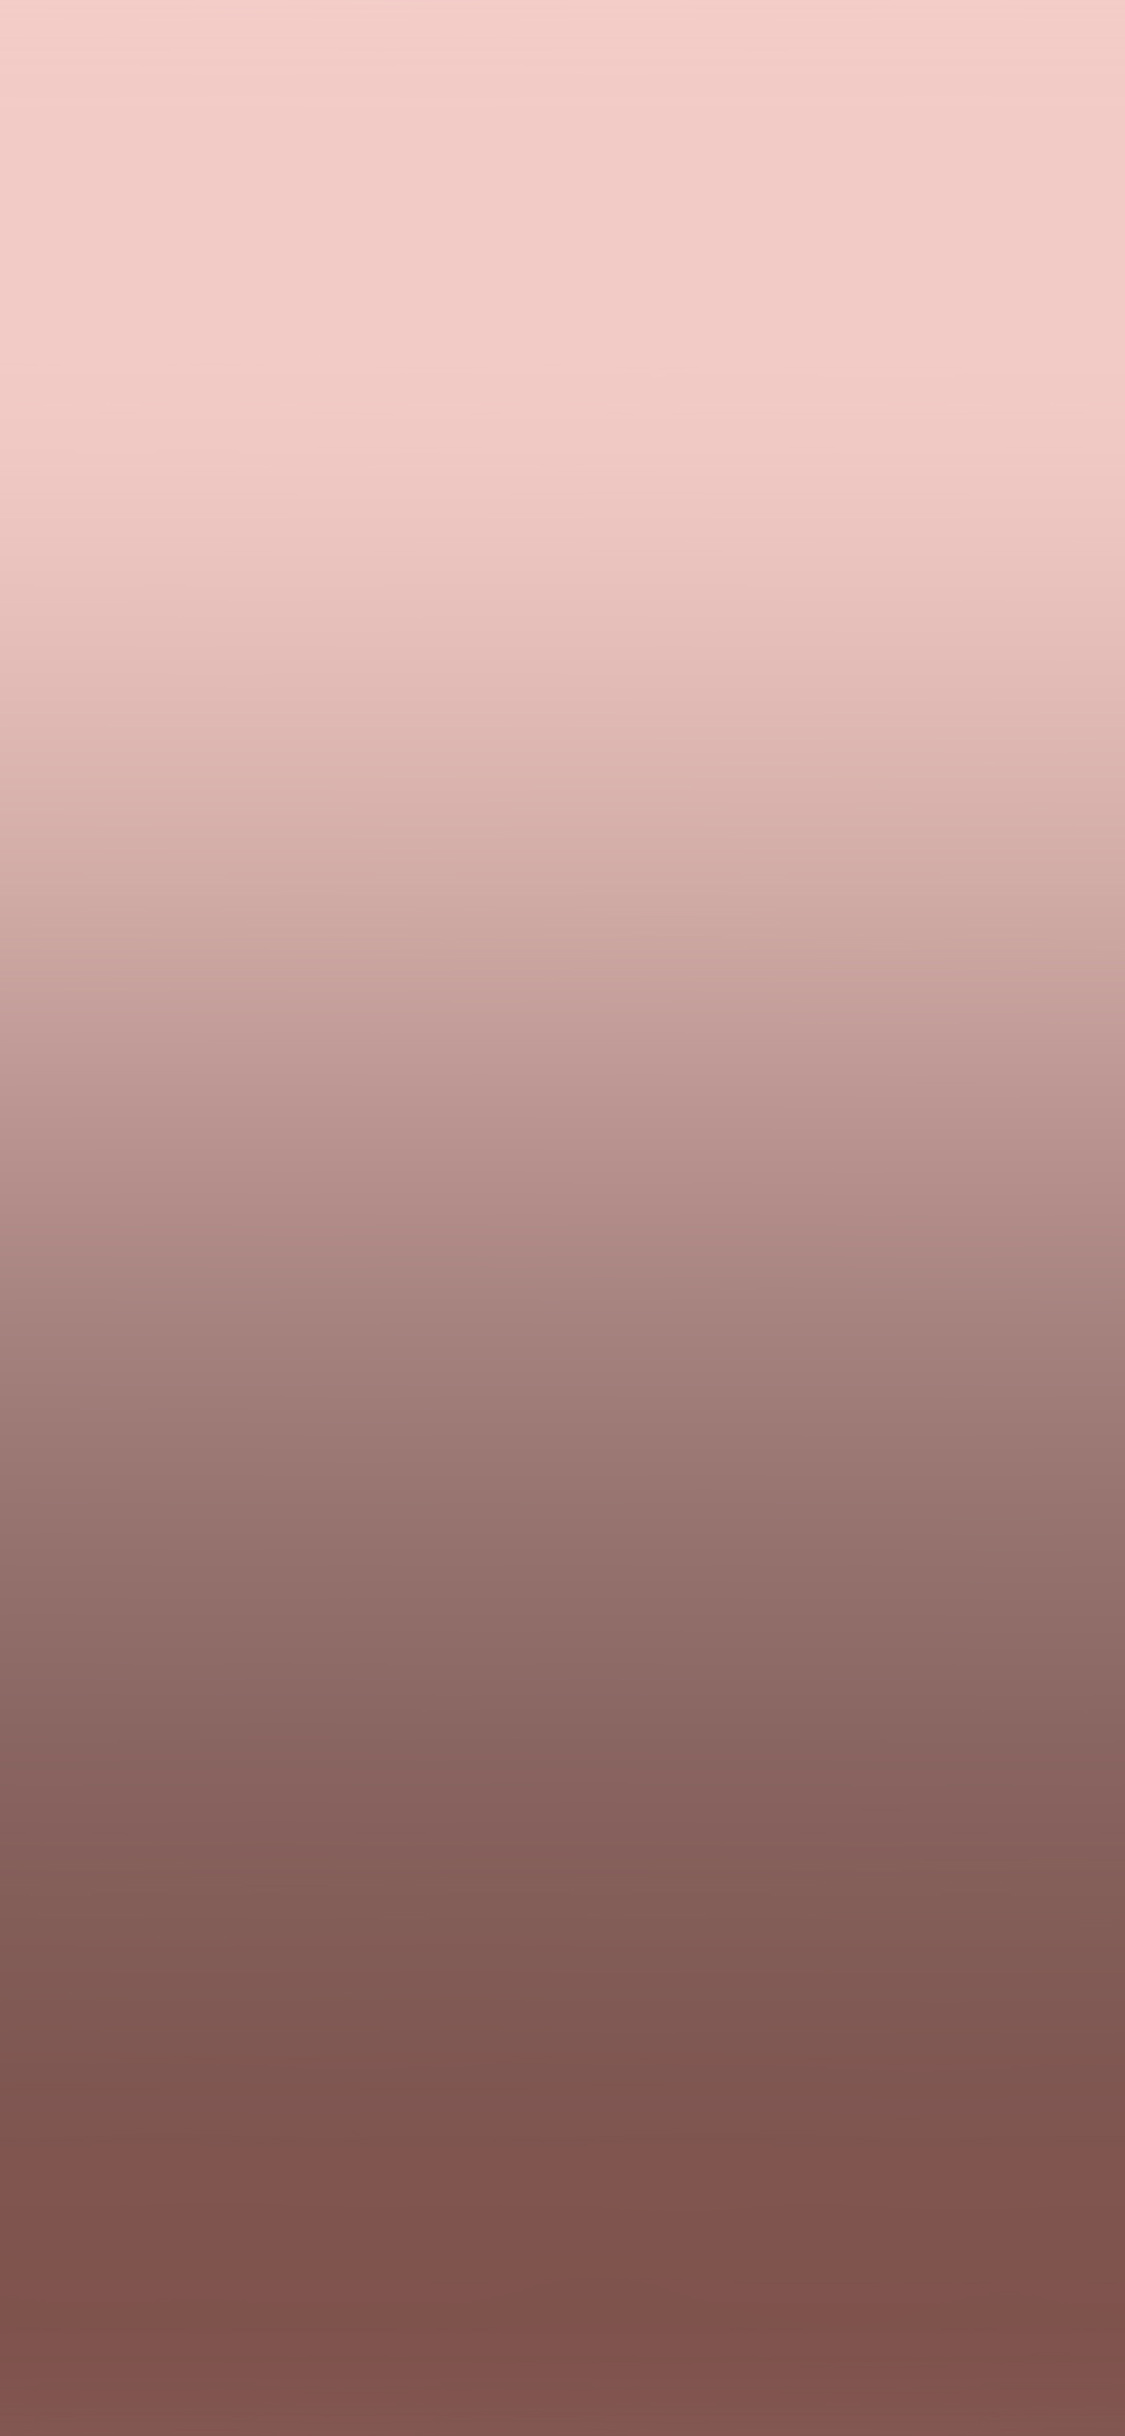 iPhone X wallpaper. rose gold pink gradation blur